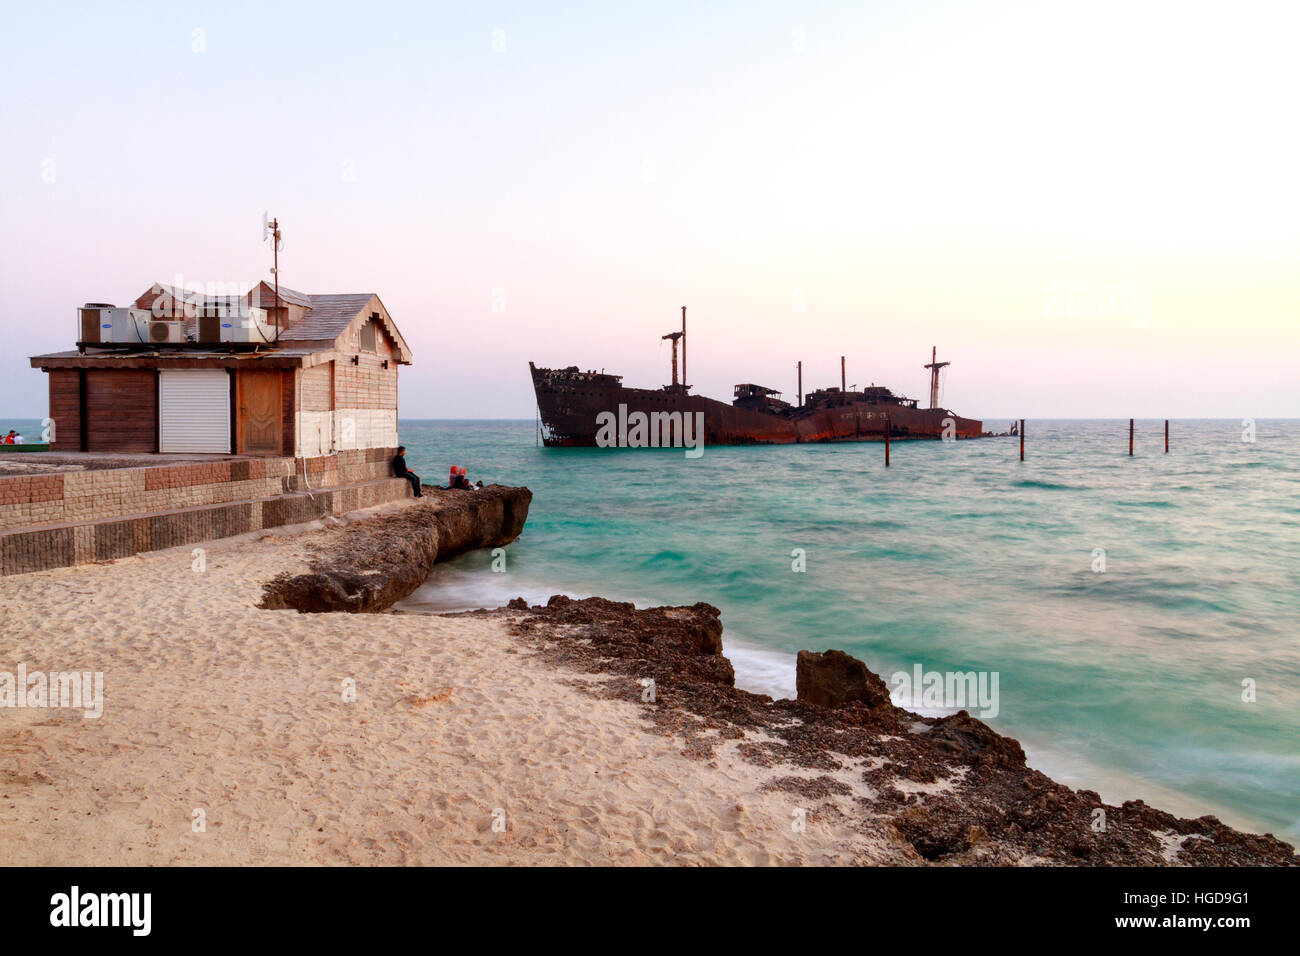 Abandoned Cargo Ship in Persian Gulf near Kish Island, Iran Stock Photo